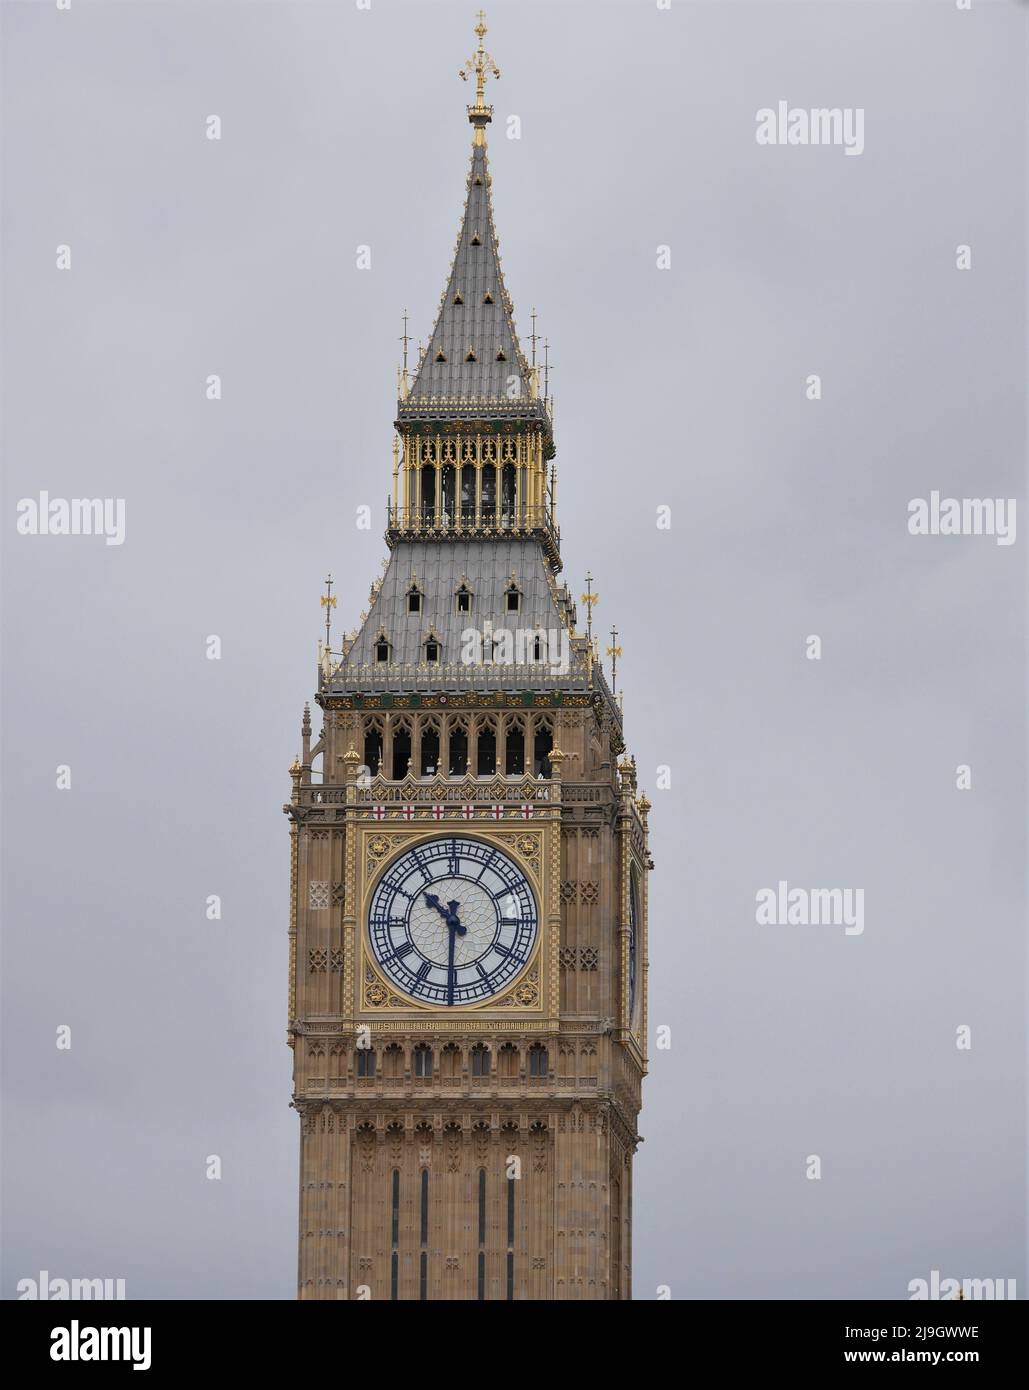 Big Ben clock face Stock Photo